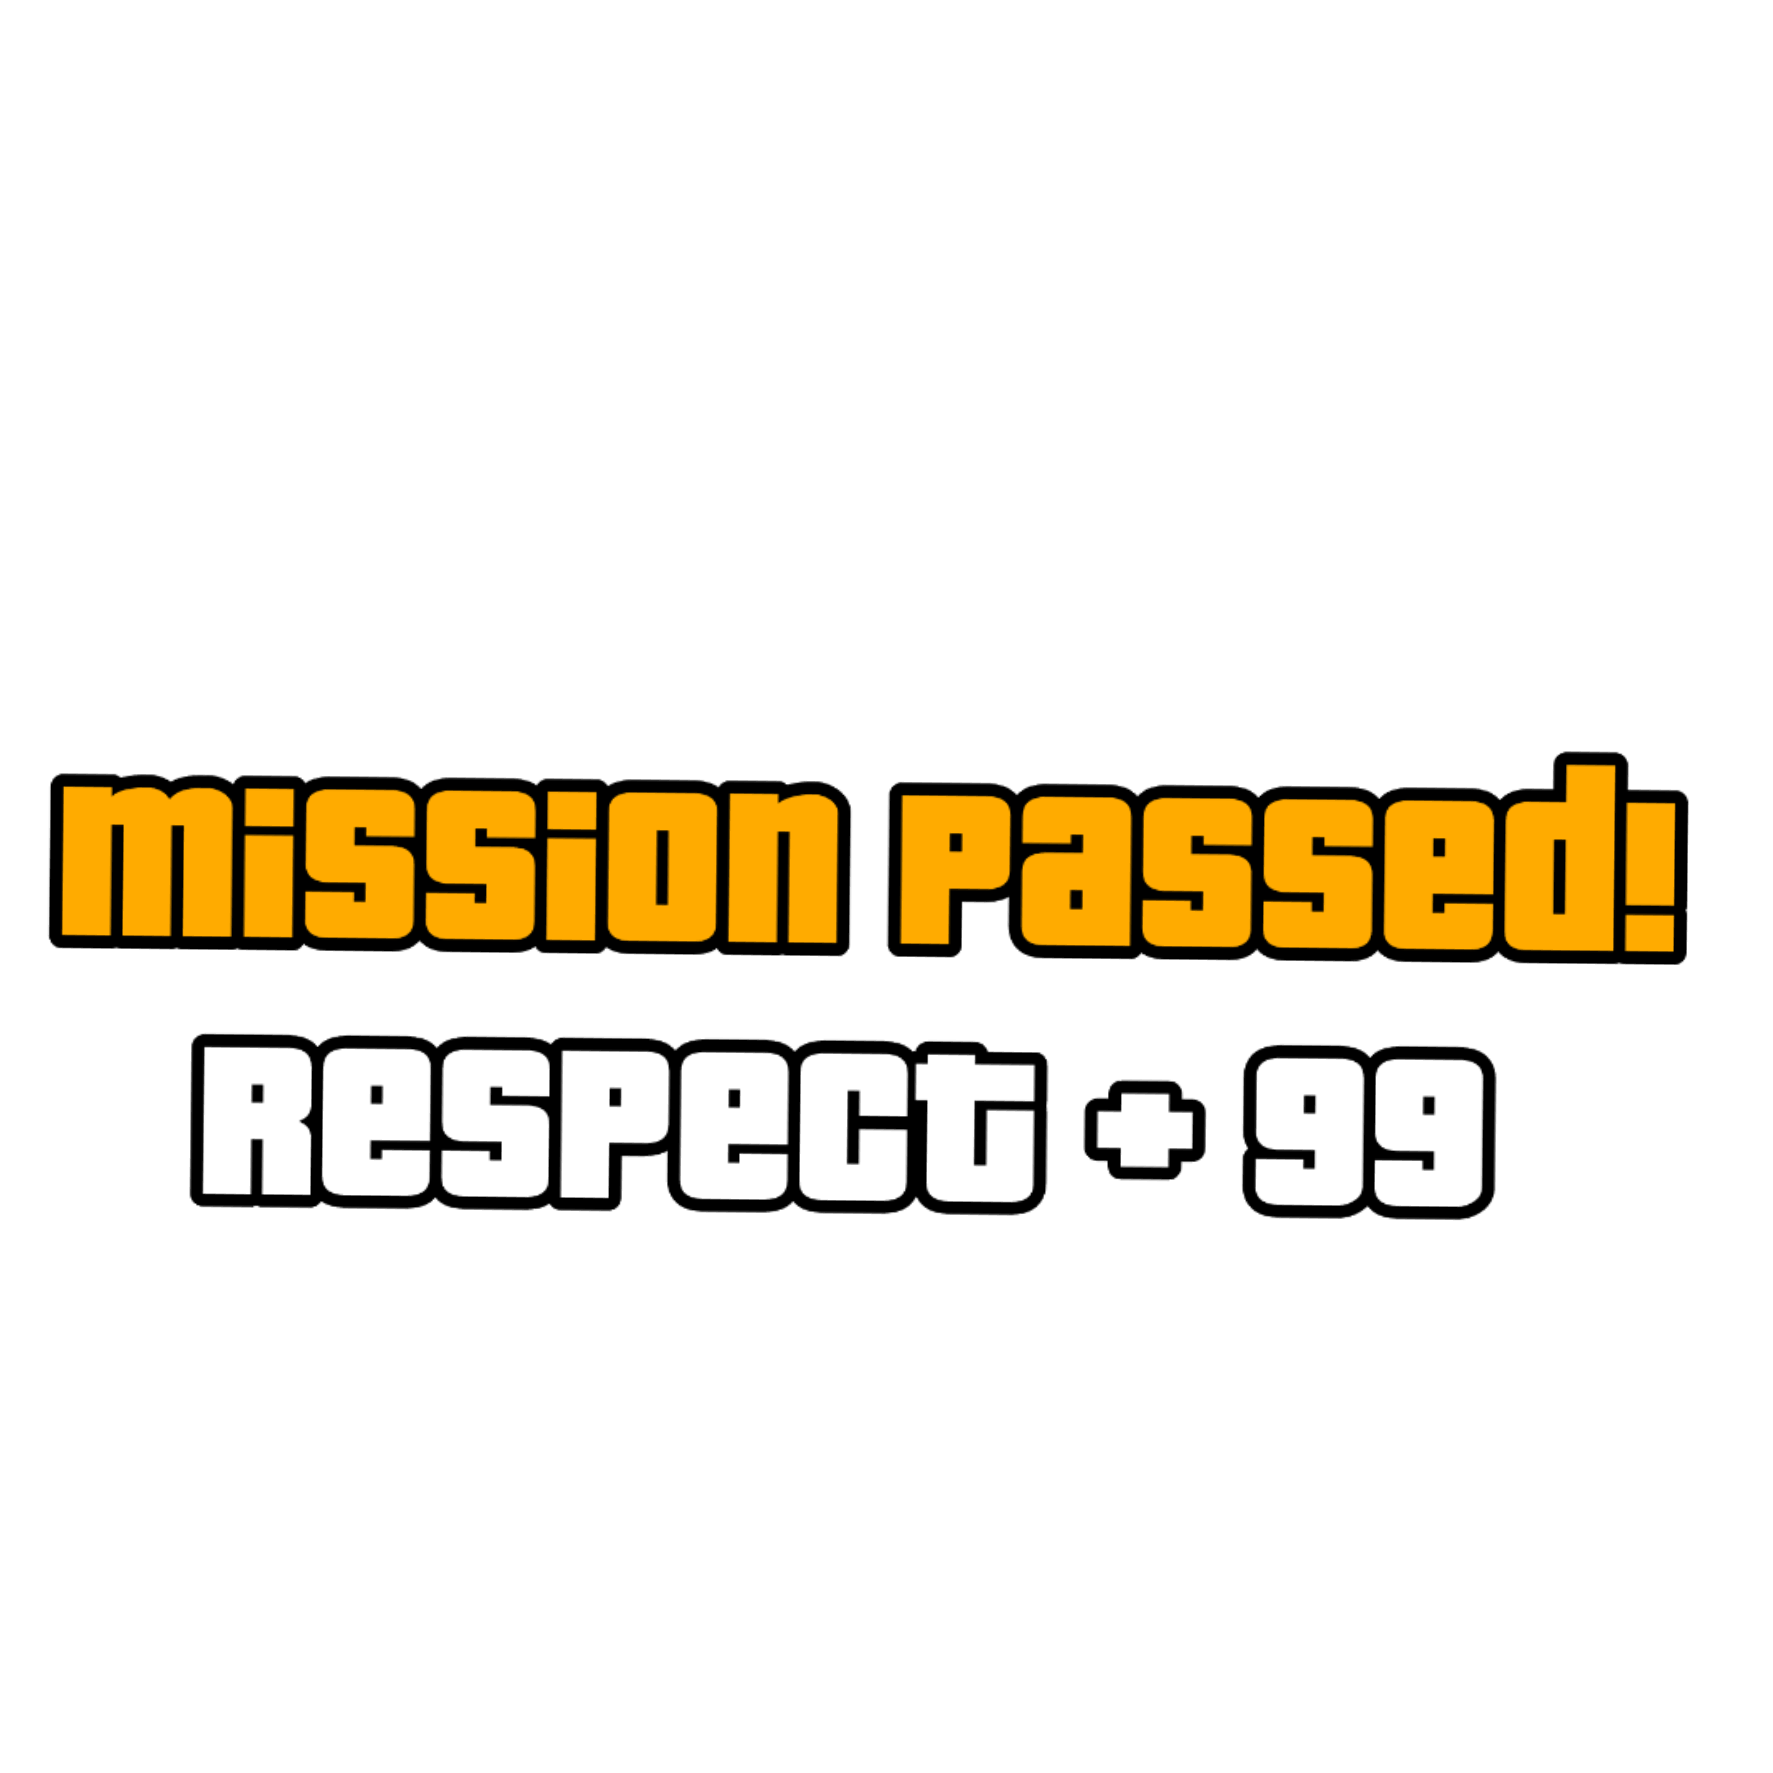 ГТА Сан андреас Mission complete. GTA Mission Passed. Mission complete respect+ GTA. Mission Passed без фона. Mission completed мем